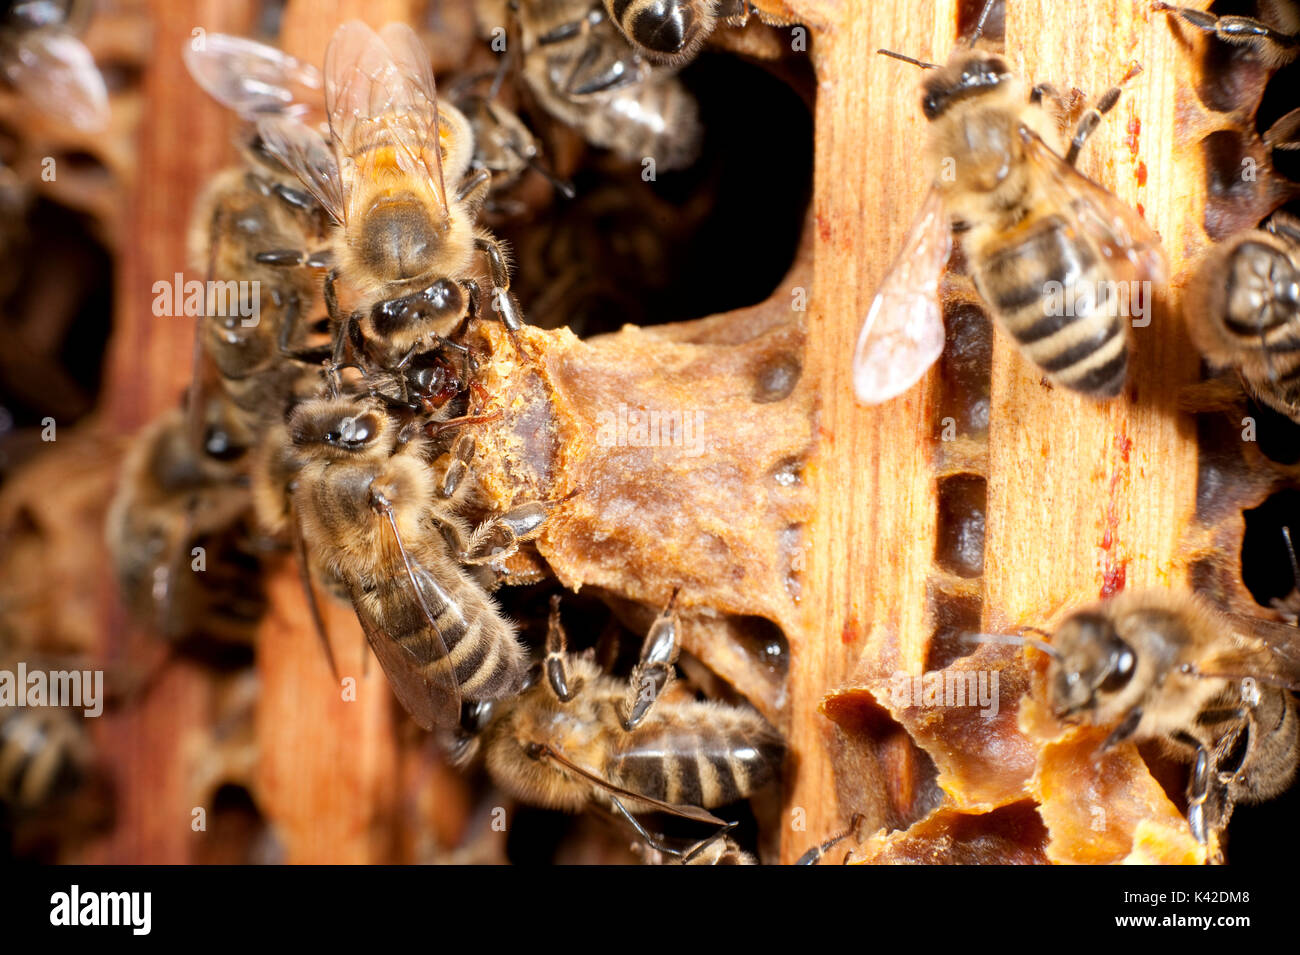 Nouvelle reine abeille, l'éclosion de la cellule de la reine dans la ruche, fréquentée par les travailleurs, Apis mellifera, Kent UK Banque D'Images